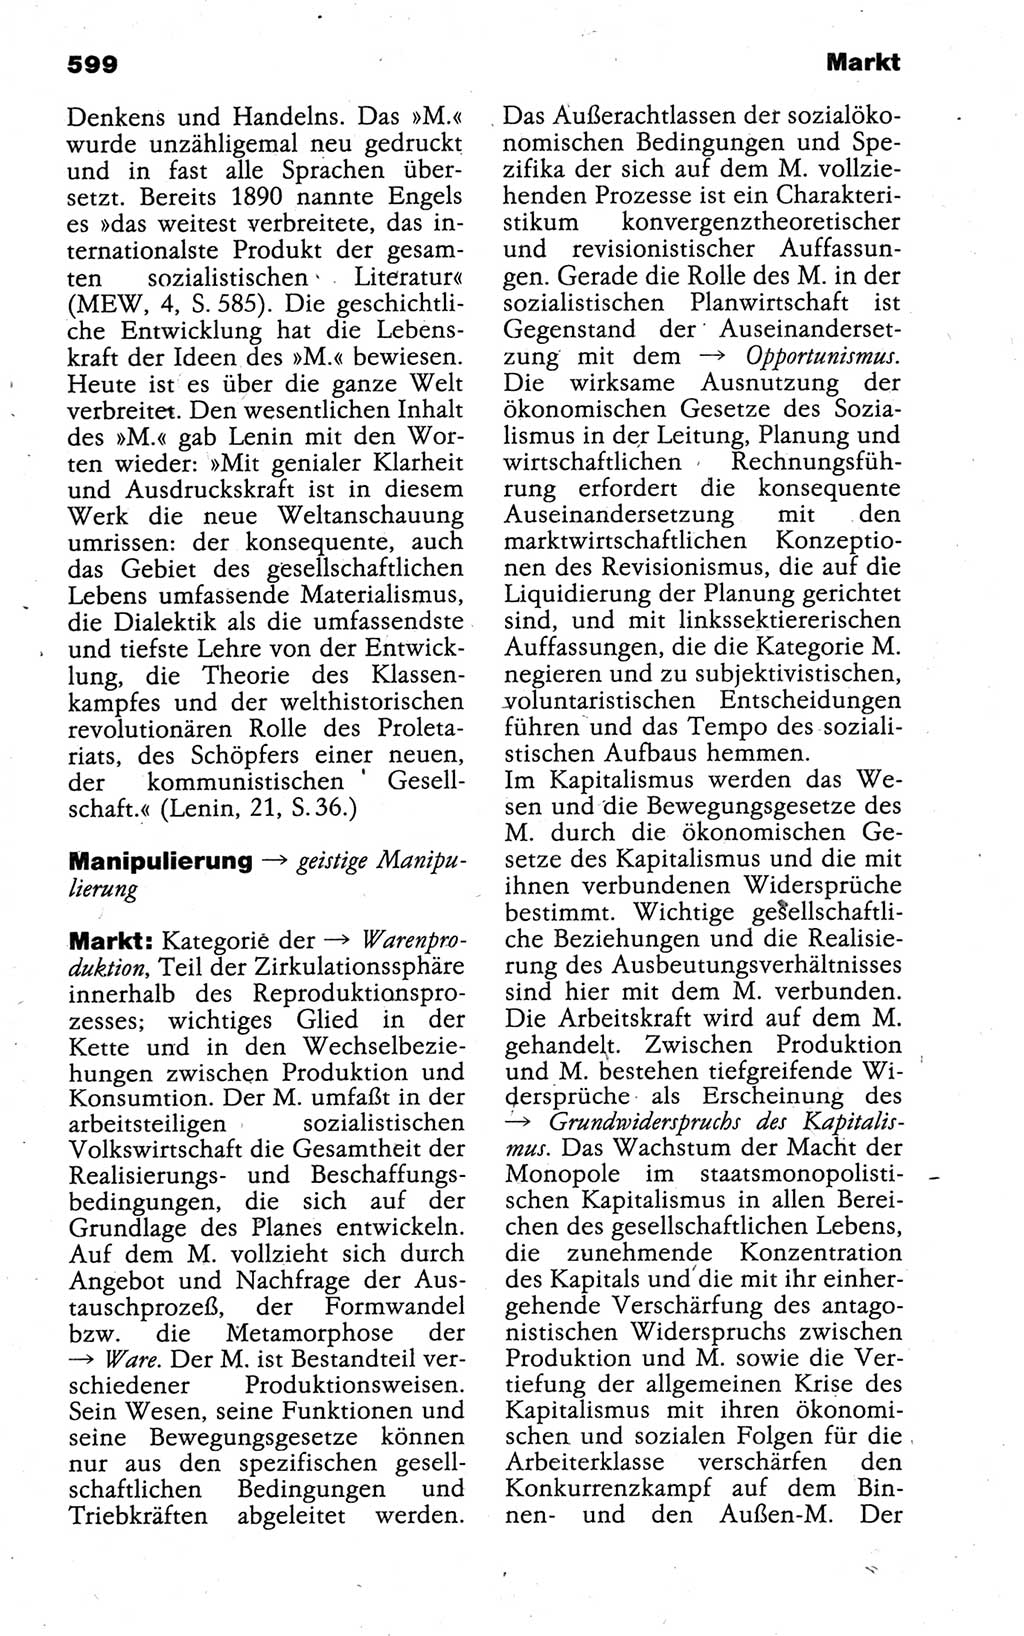 Kleines politisches Wörterbuch [Deutsche Demokratische Republik (DDR)] 1988, Seite 599 (Kl. pol. Wb. DDR 1988, S. 599)